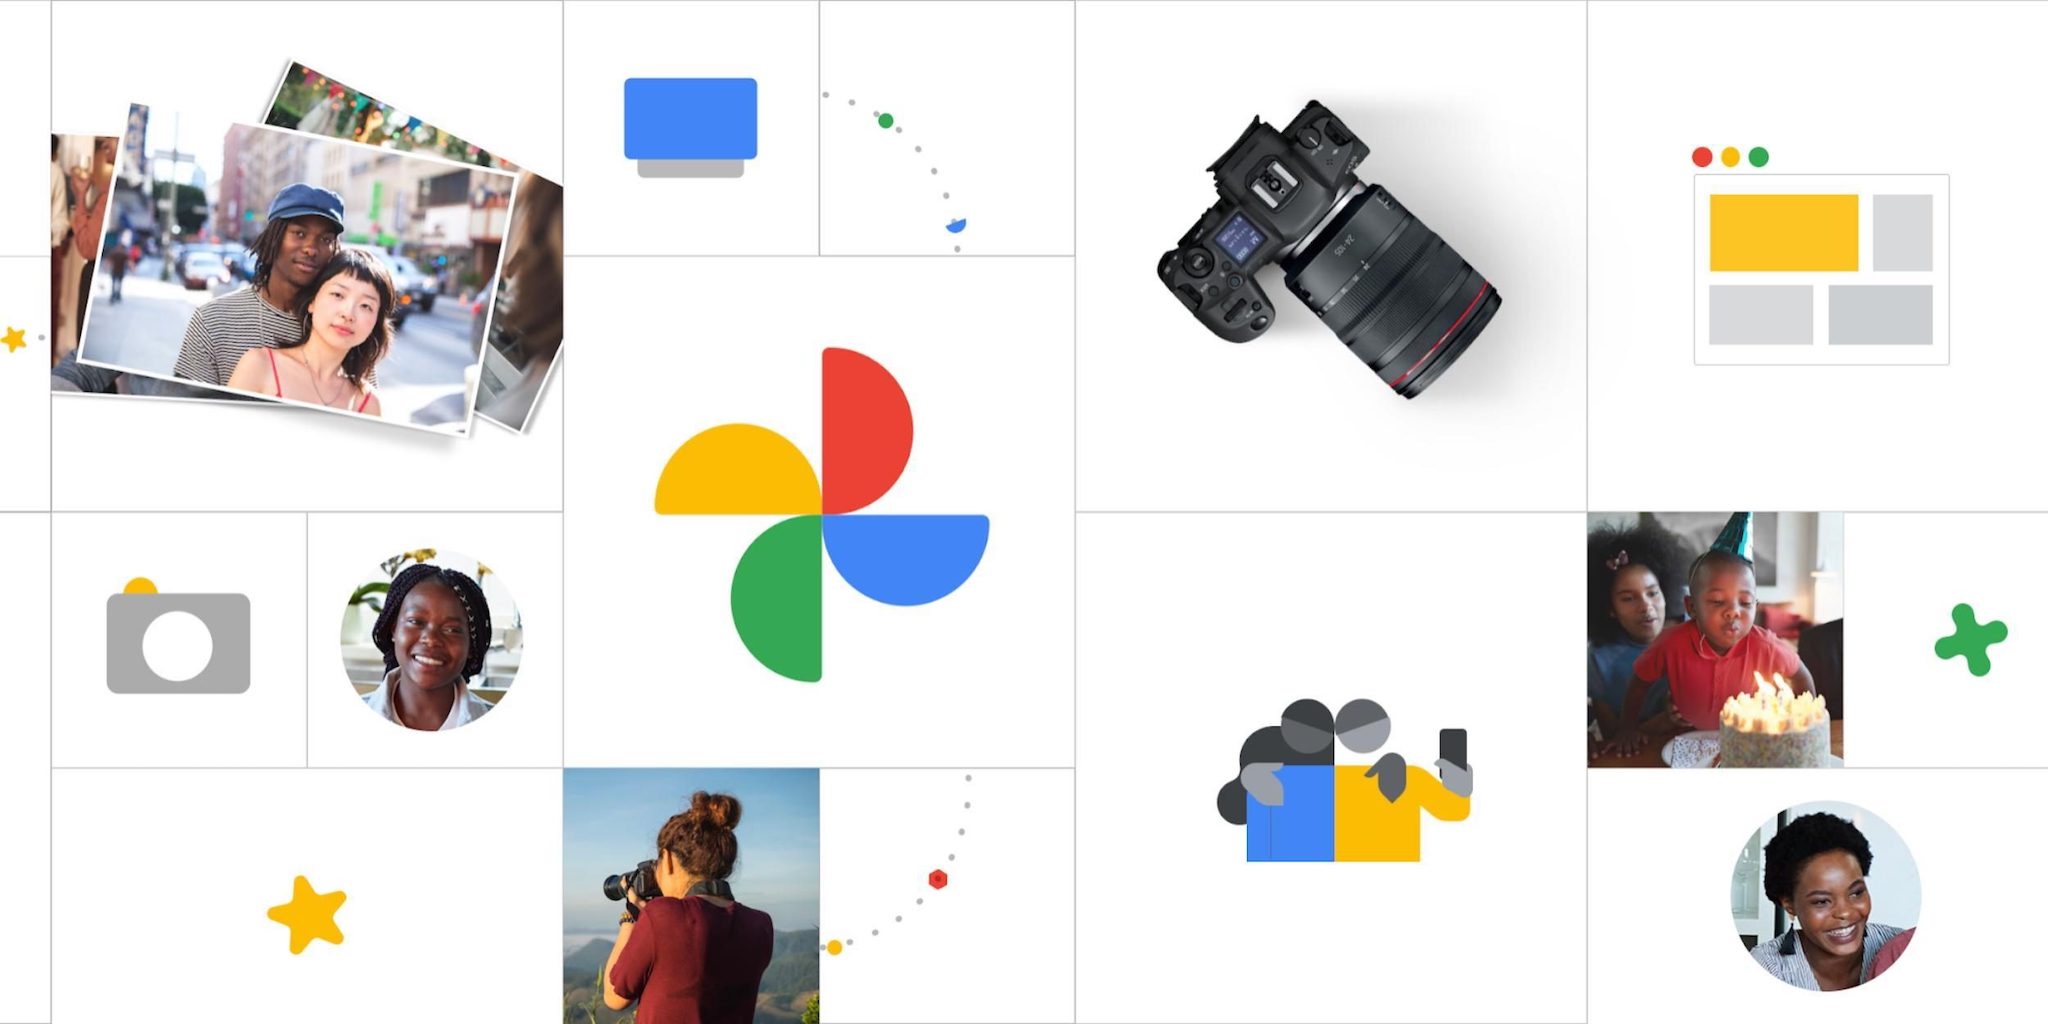 Google cuối cùng cũng tối ưu Google Photos cho tablet Android, anh em còn dùng tablet Android không?